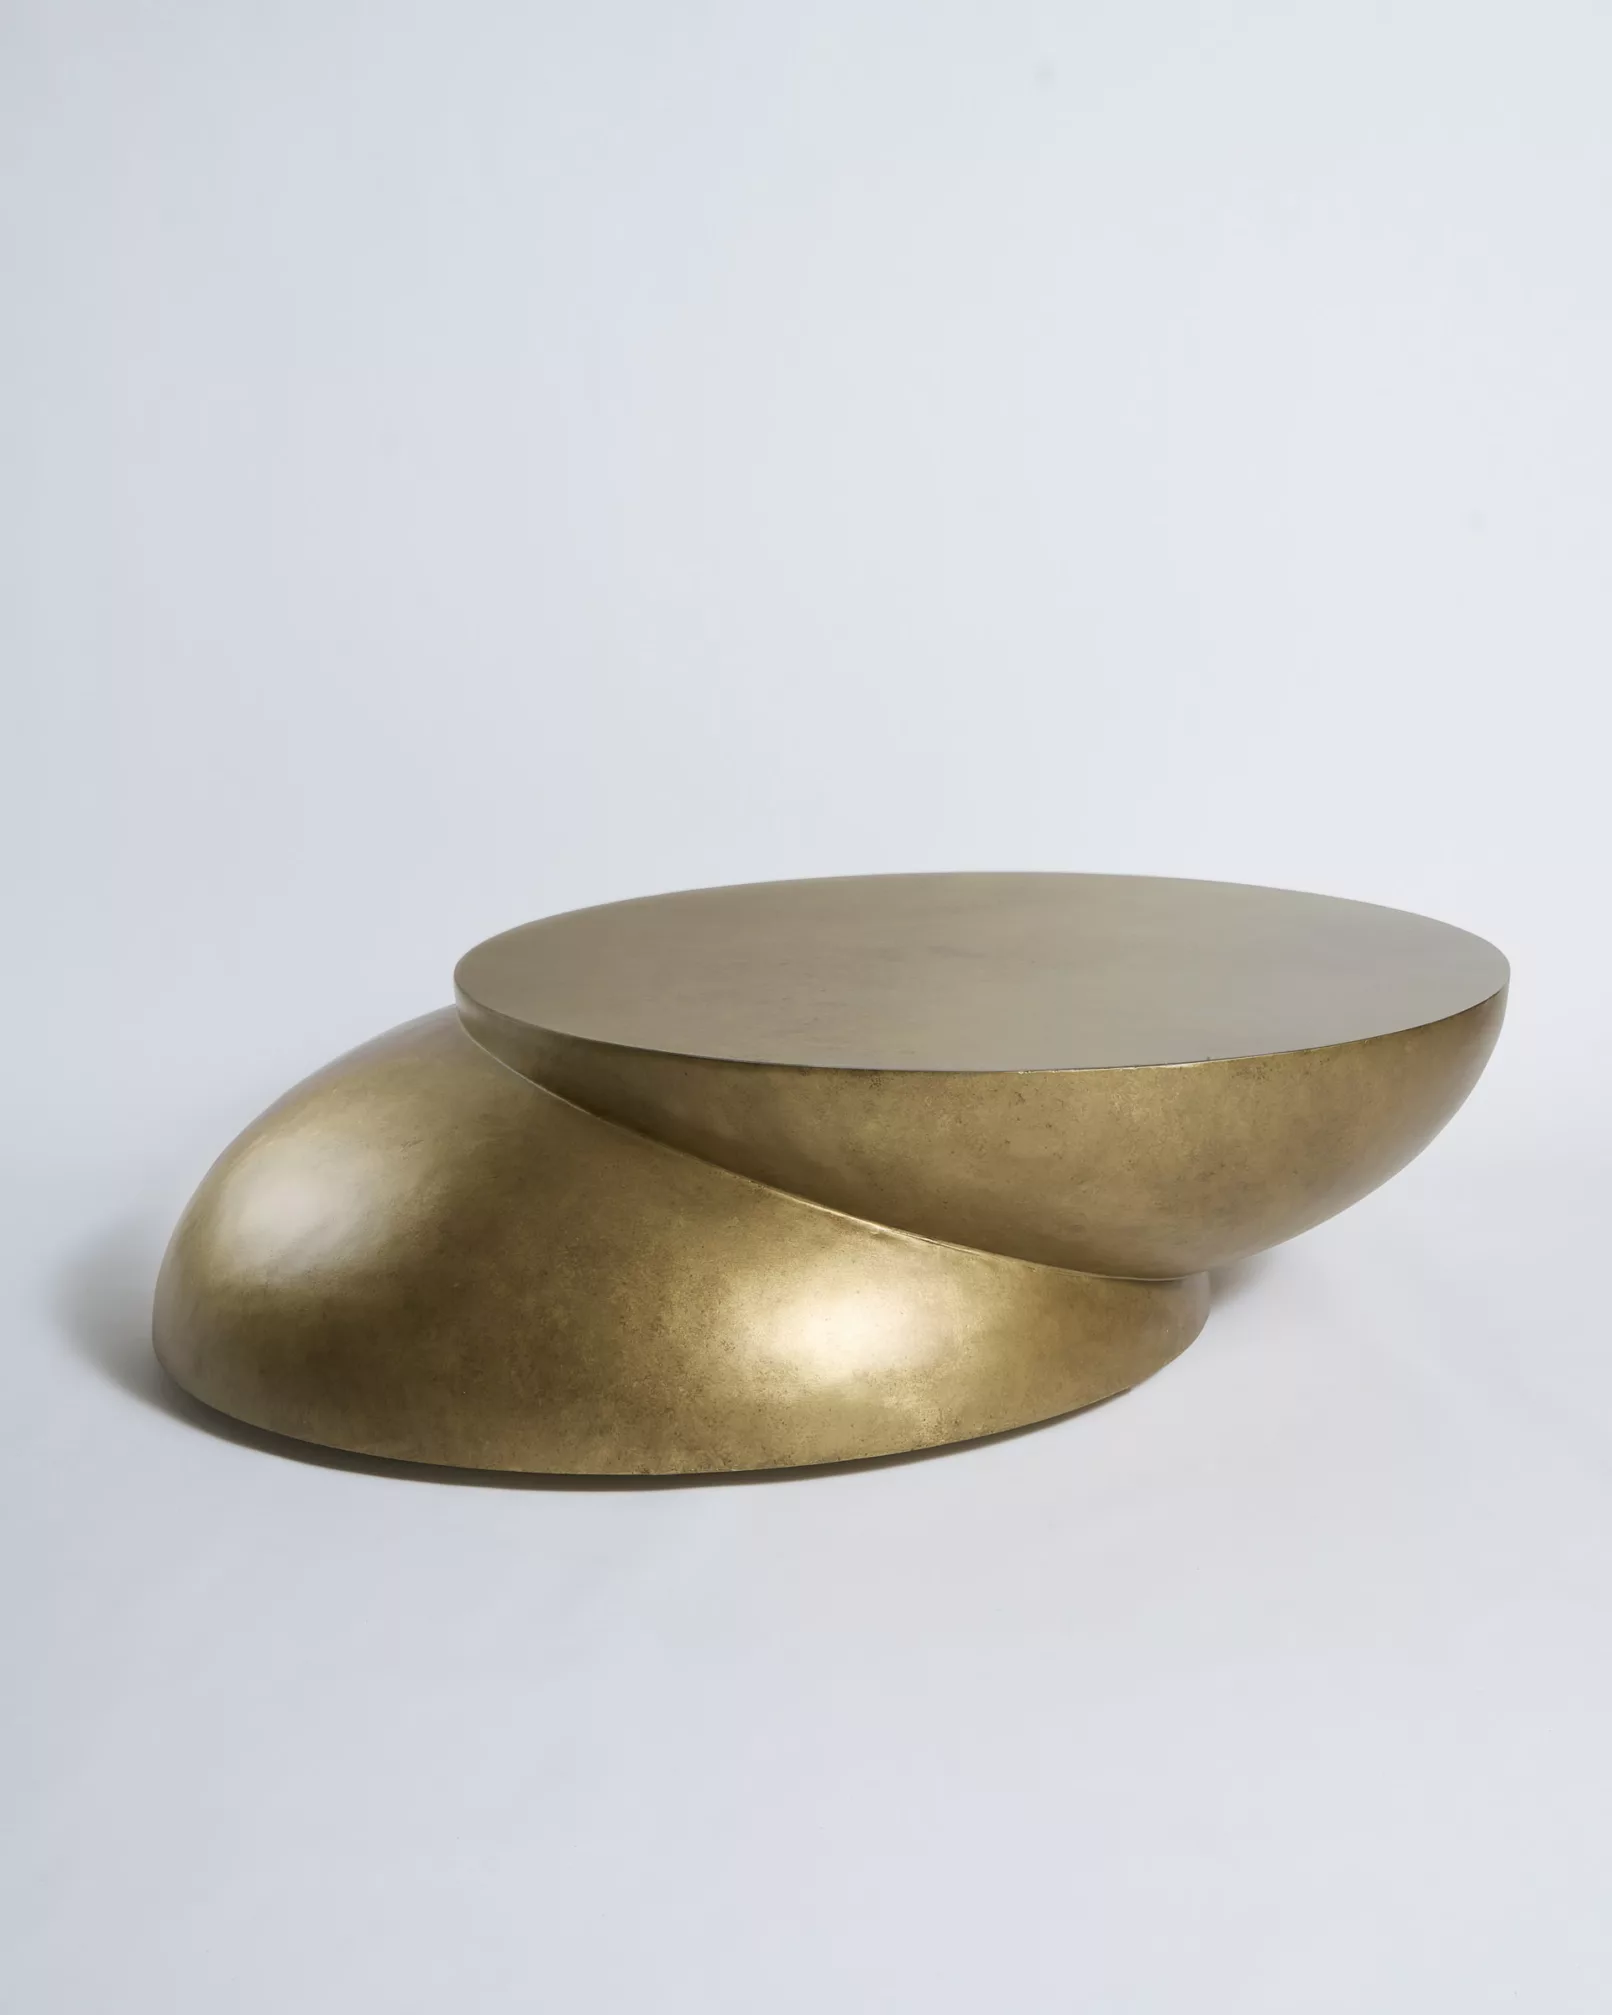 coffee table di design color oro antico (sfera tagliata a metà e sovrapposta), realizzato dal designer Pietro Franceschini e fotografata da duzimage, fotografo commerciale a La Spezia